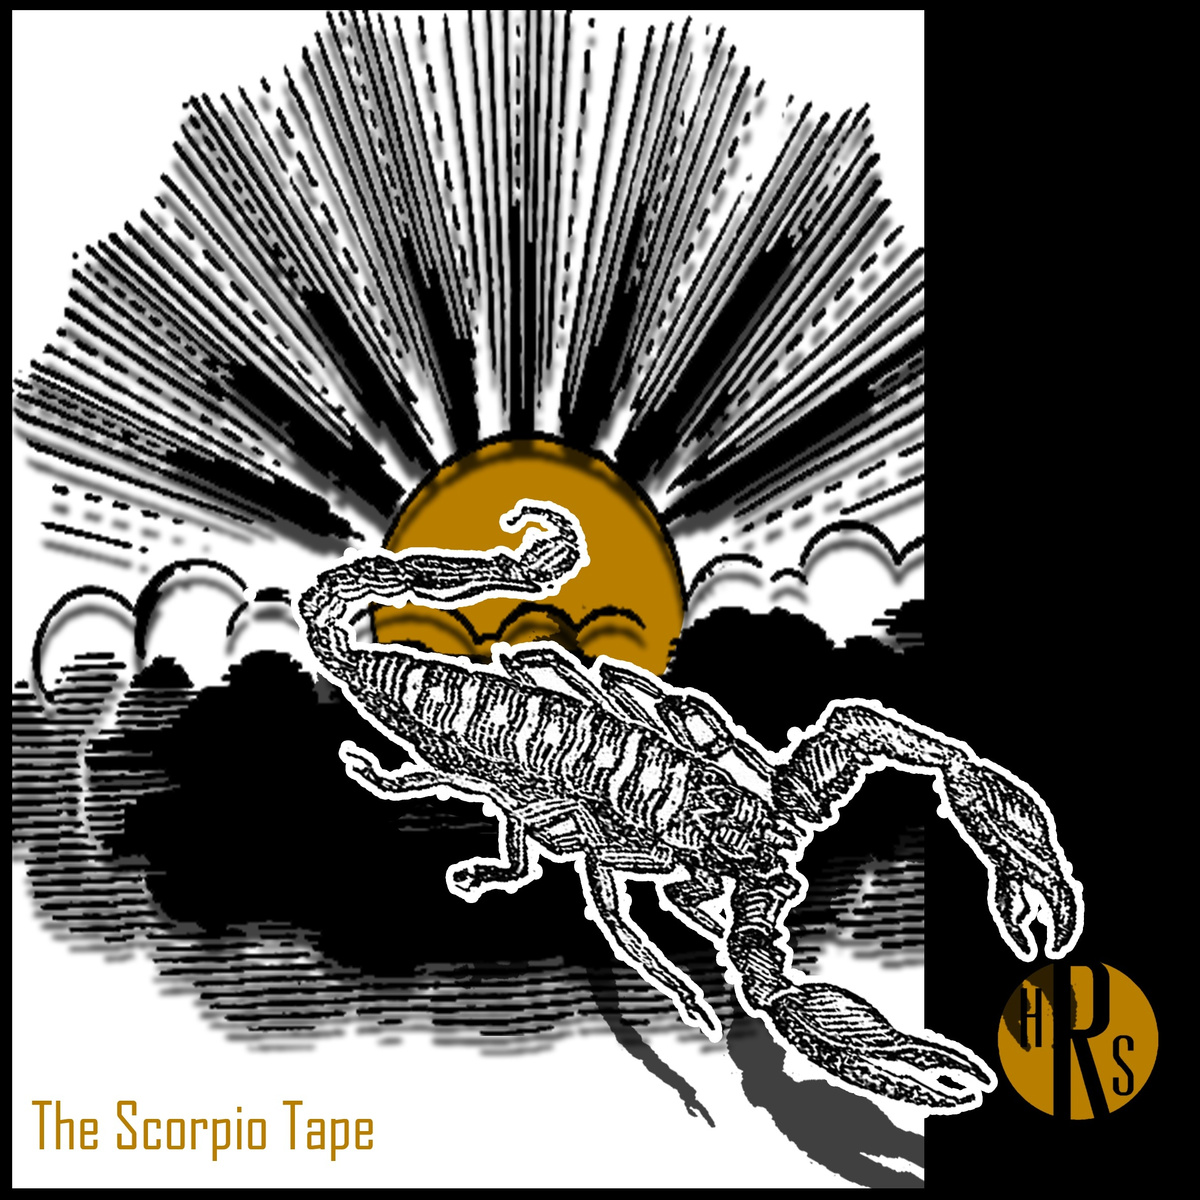 ShunGu "The Scorpio Tape" Release | @HRSociete